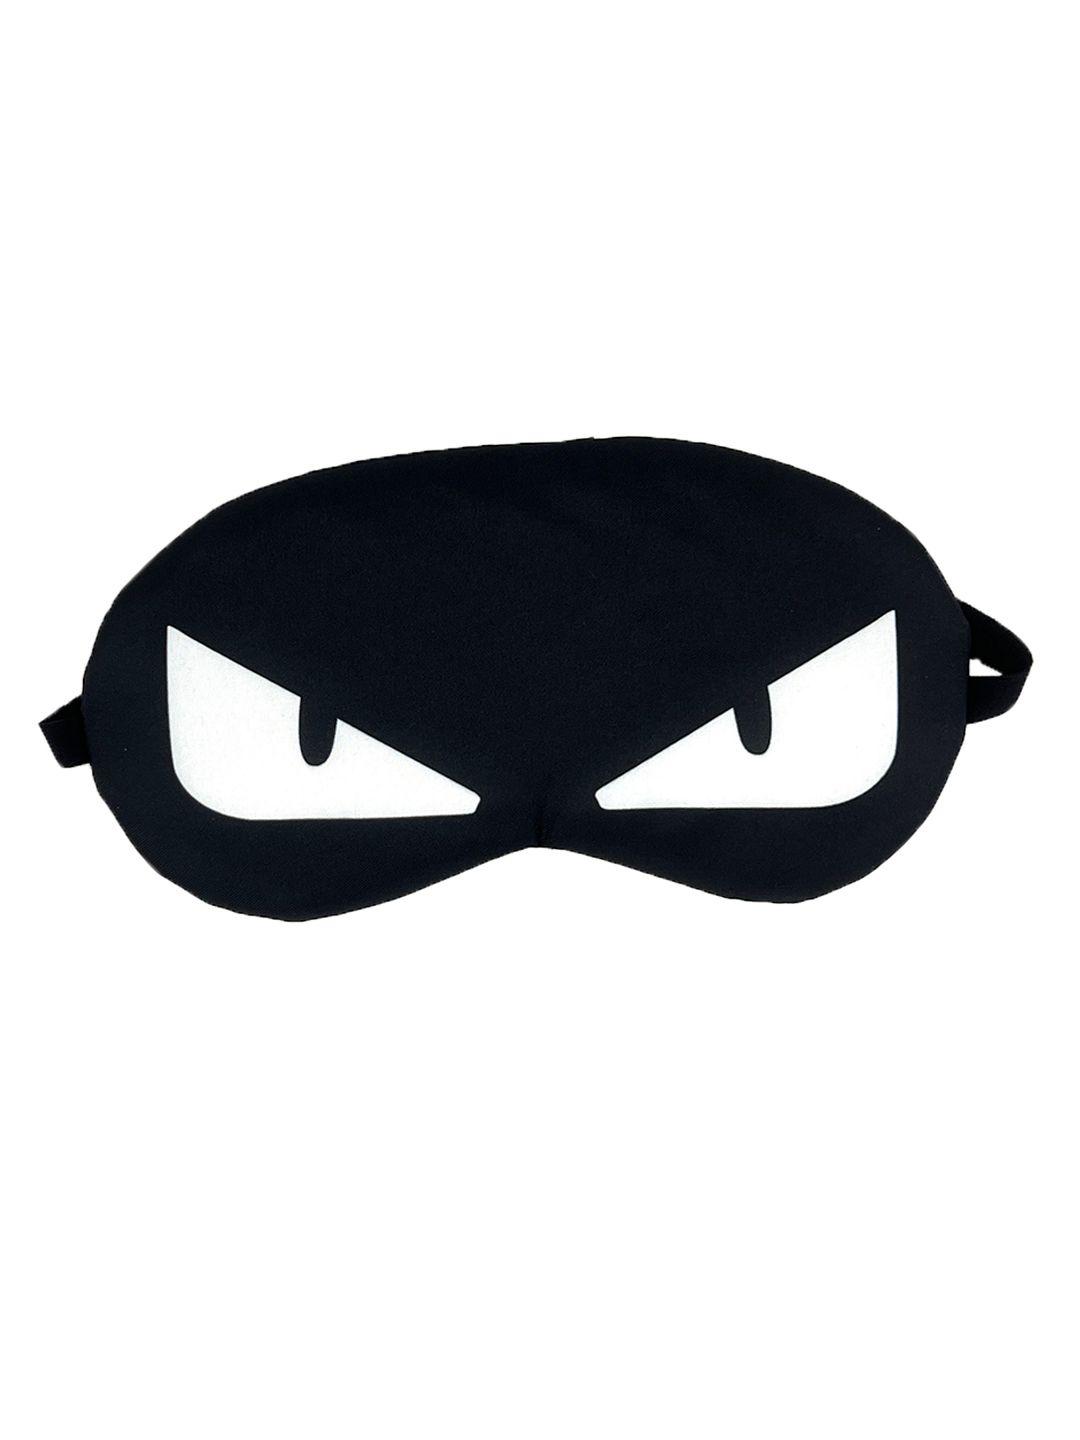 awestuffs black printed eye mask